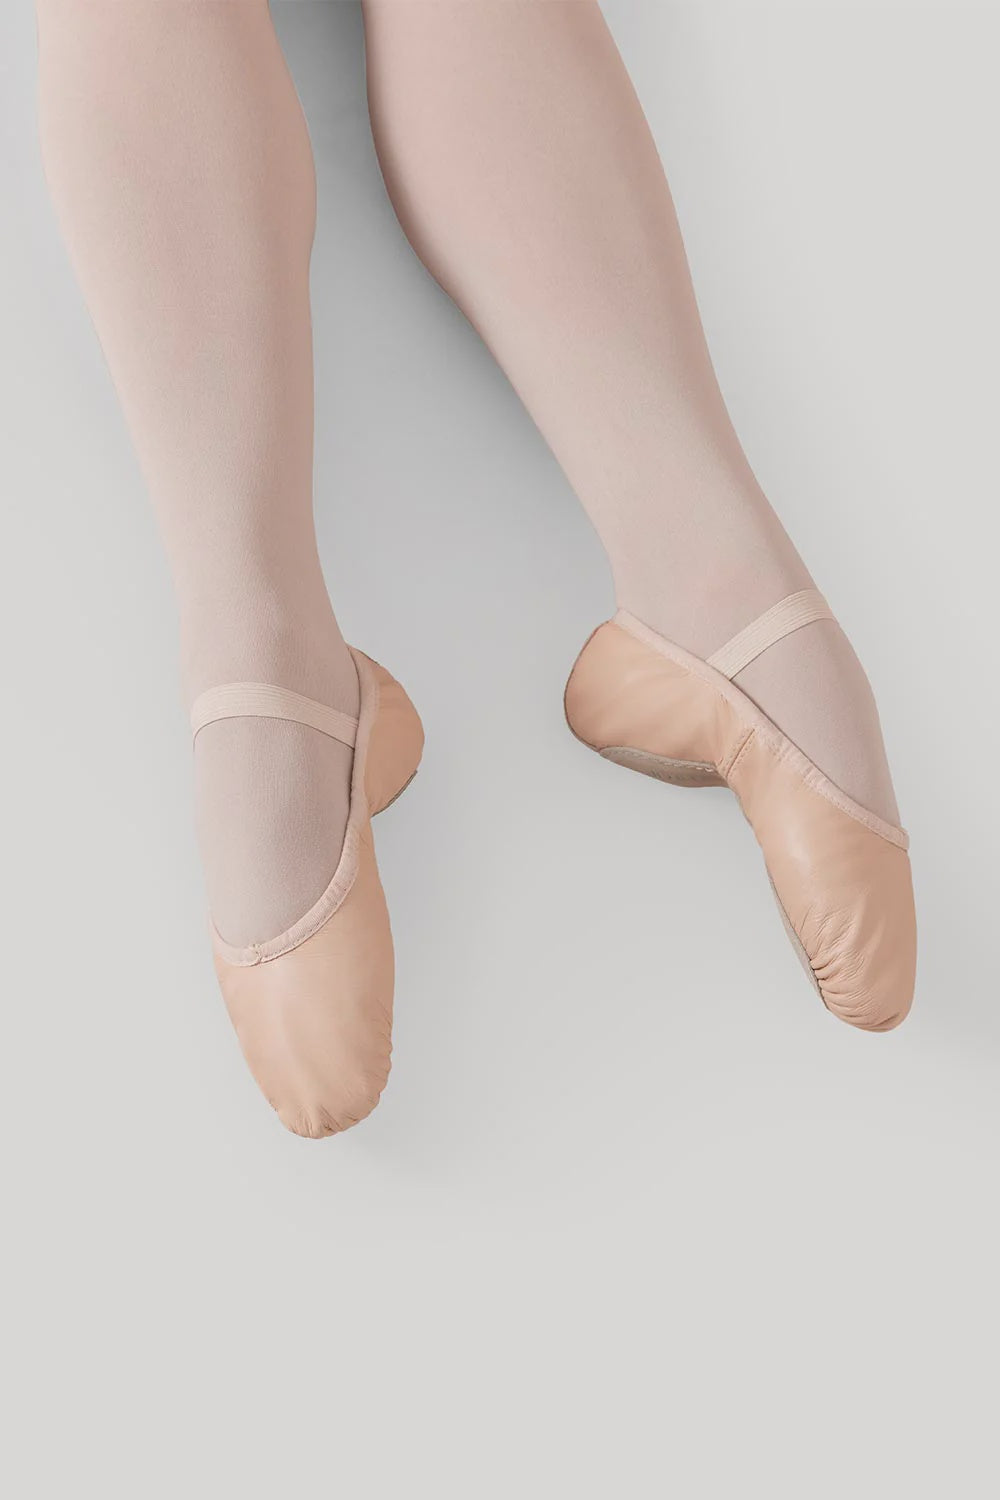 SALE | Dansoft Full Sole Leather Ballet Shoe